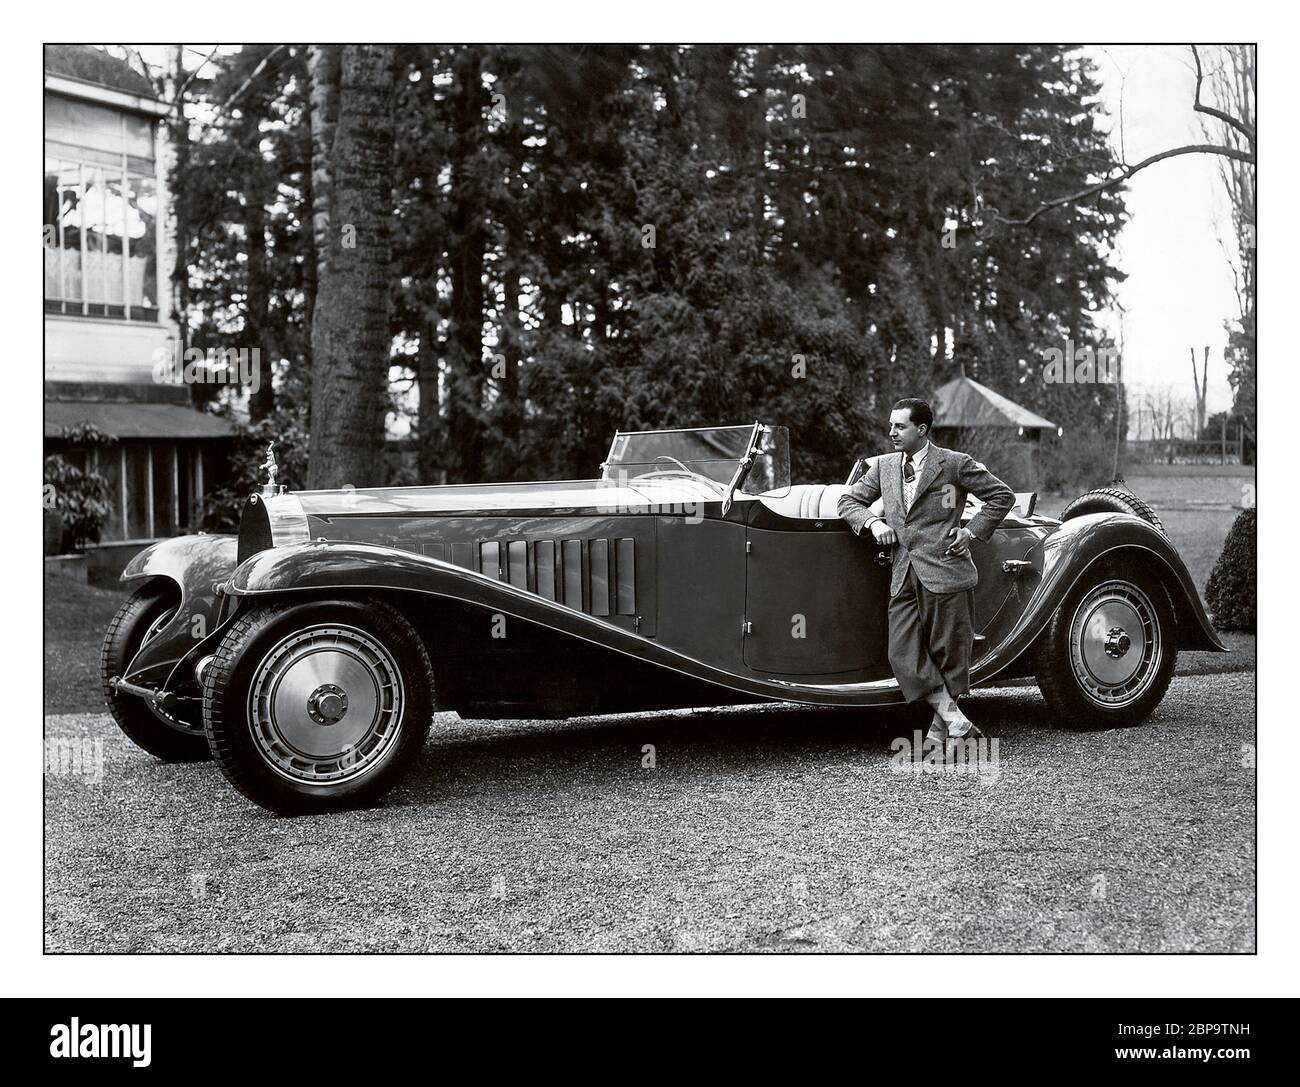 Vintage Bugatti Typ 41 Royale Esders Roadster, Archiv 1927 Jean Bugatti steht neben dem Bugatti Typ 41, besser bekannt als Royale, ist ein großer Luxuswagen von 1927 bis 1933 mit einem Radstand von 4.3 m (169.3 in) und einer Gesamtlänge von 6.4 m (21 ft). Er wiegt ca. 3,175 kg (7,000 lb) und verwendet einen 12.763-Liter-Motor (778 Cu in) mit acht Liter Hubraum. Das Royale ist eines der größten Autos der Welt. Jean Bugatti war französischer Automobildesigner und Testingenieur. Der in Köln geborene Gianoberto Maria Carlo Bugatti war der älteste Sohn von Ettore Bugatti. Stockfoto